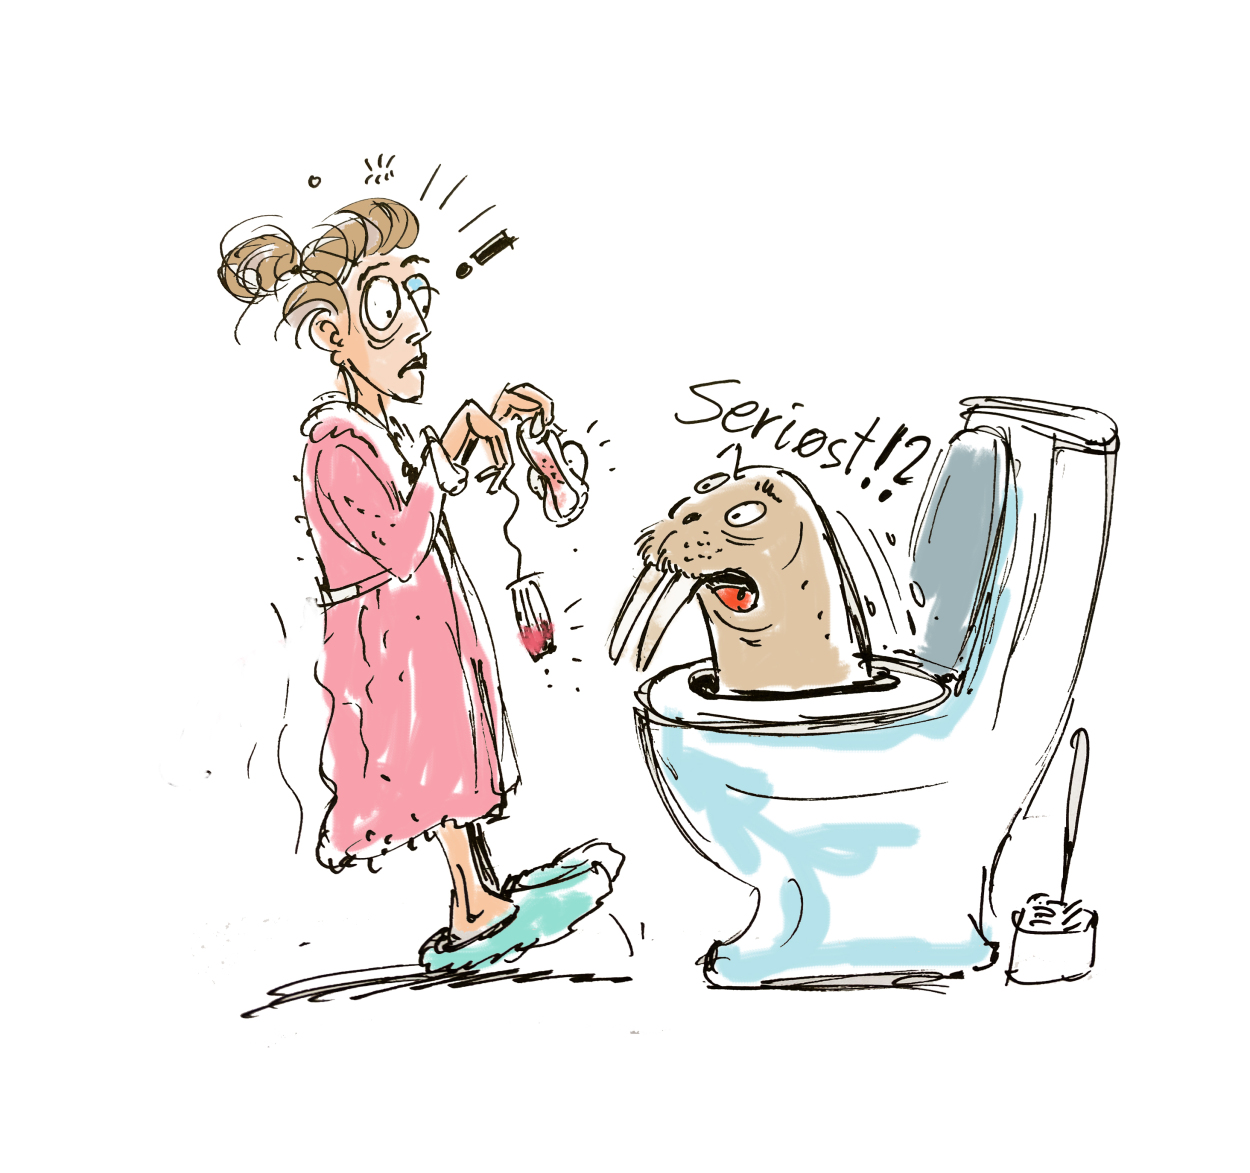 Tegning: Kvinne står og skal kaste tampong og bind i toalettet, en hvalross dukker opp av skåla og roper "Seriøst!!!"